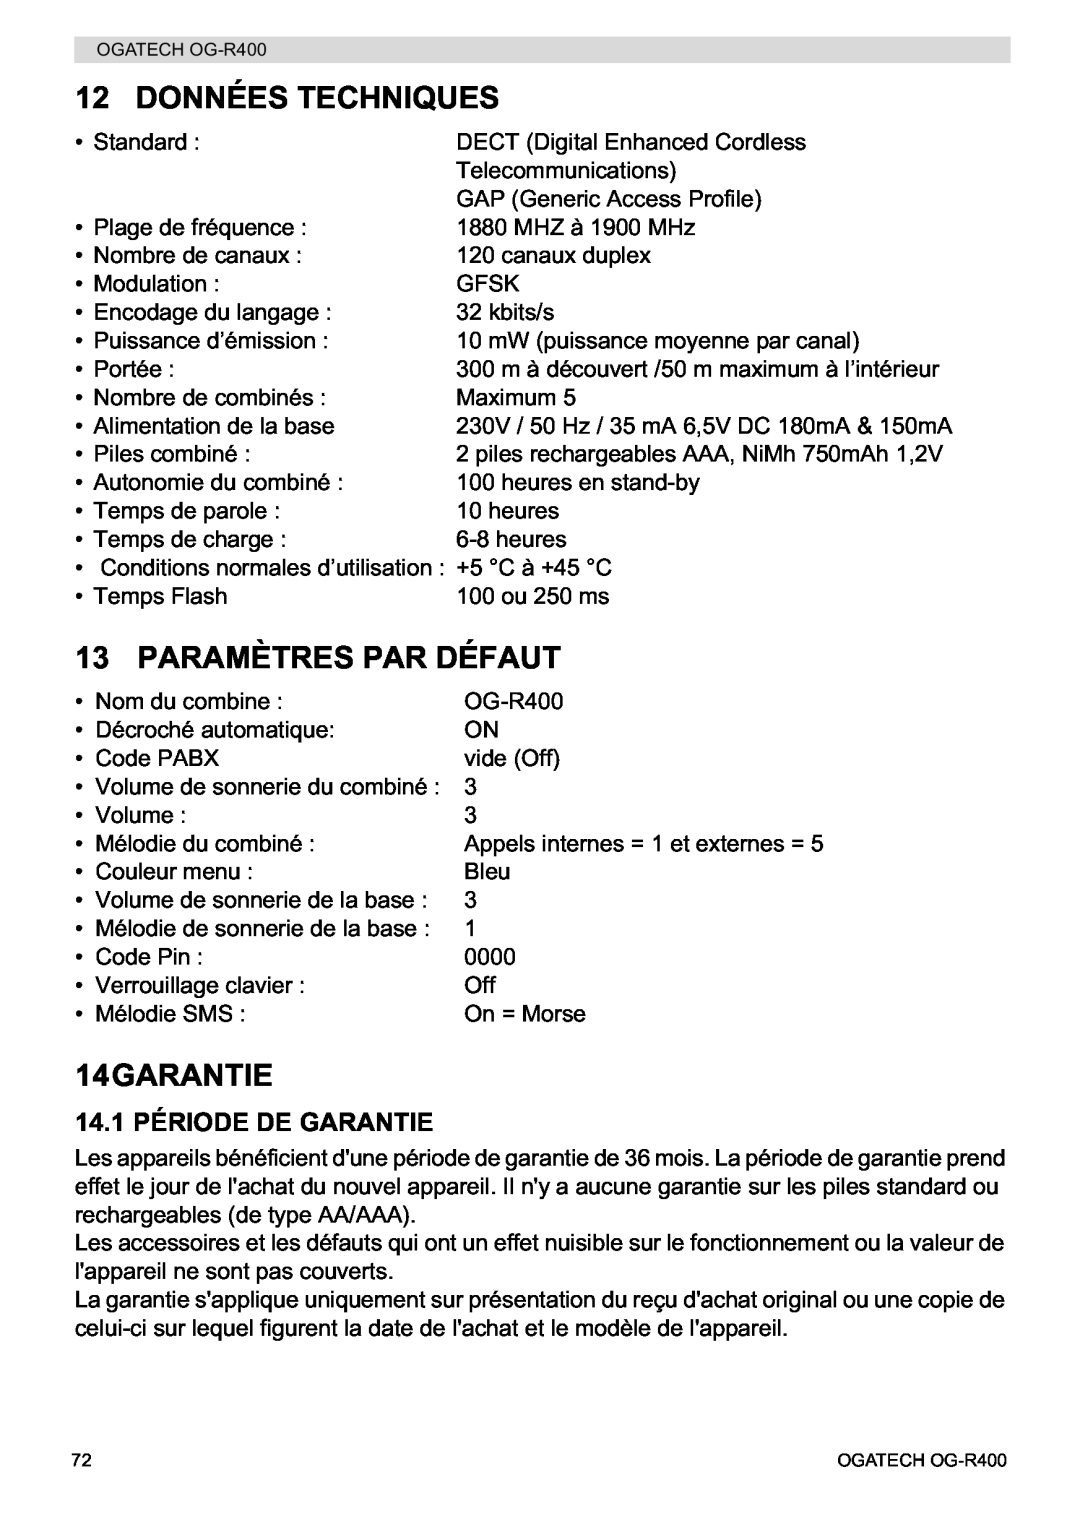 Topcom OG-R400 manual Données Techniques, Paramètres Par Défaut, 14.1 PÉRIODE DE GARANTIE, 14GARANTIE 